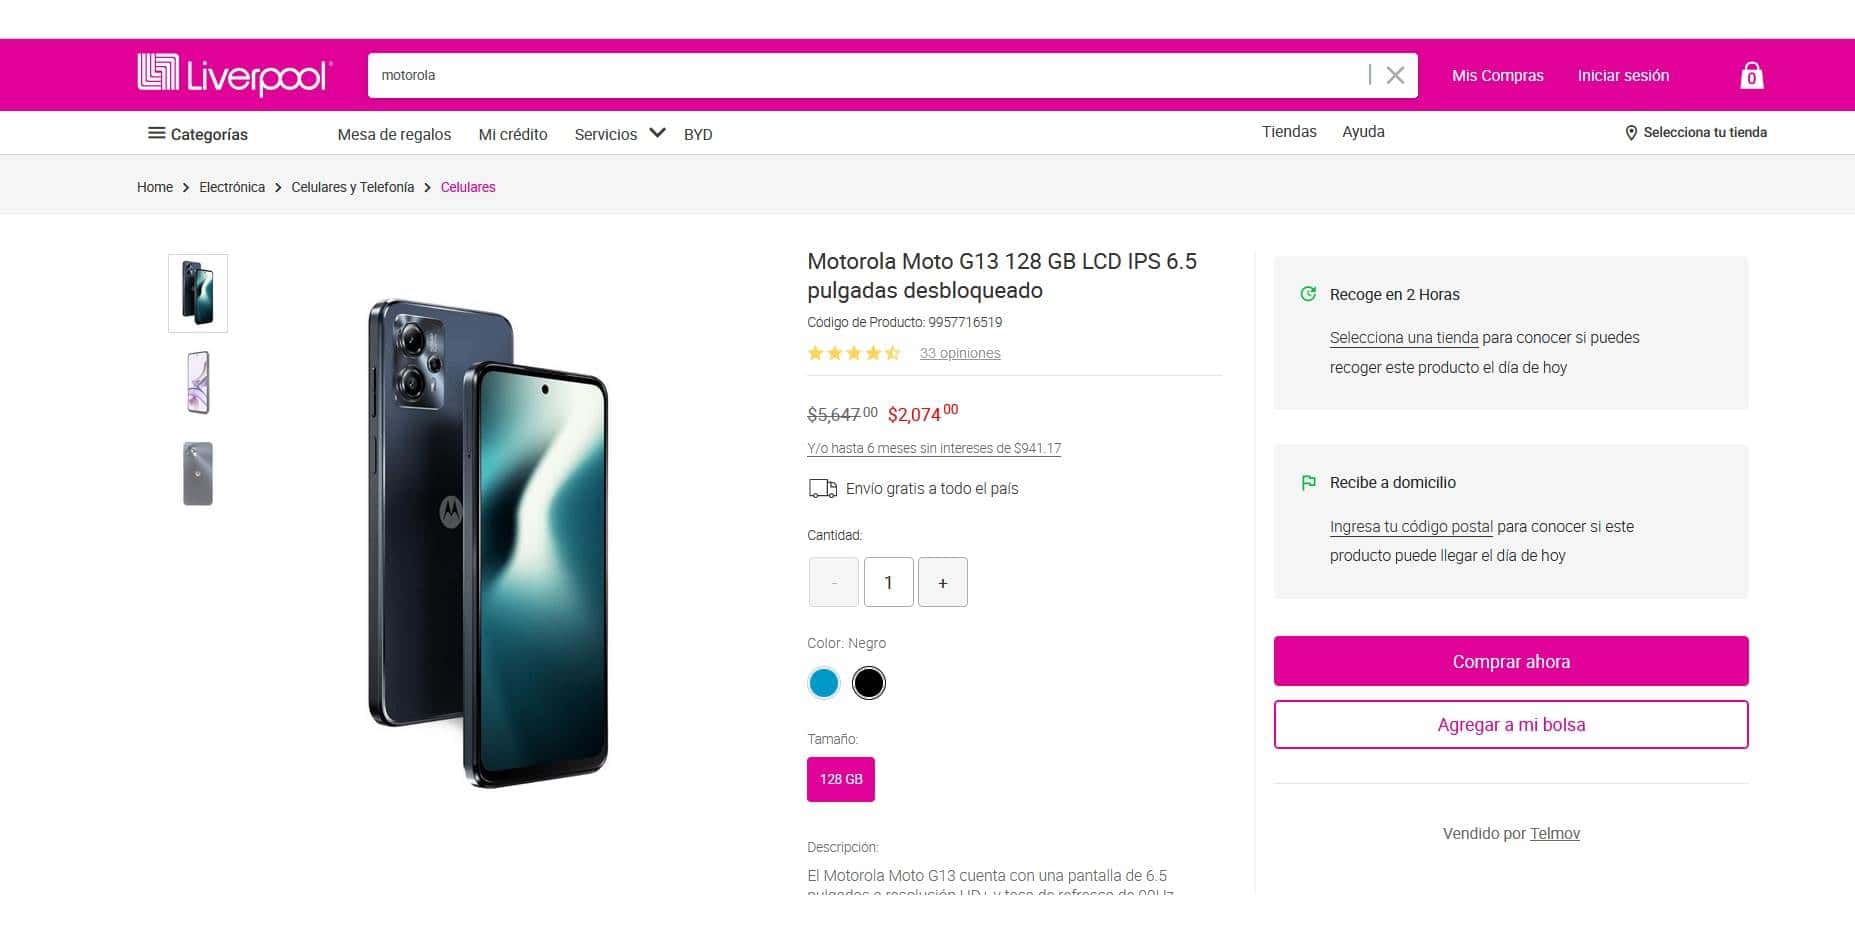 Características y precio del smartphone Motorola Moto G13